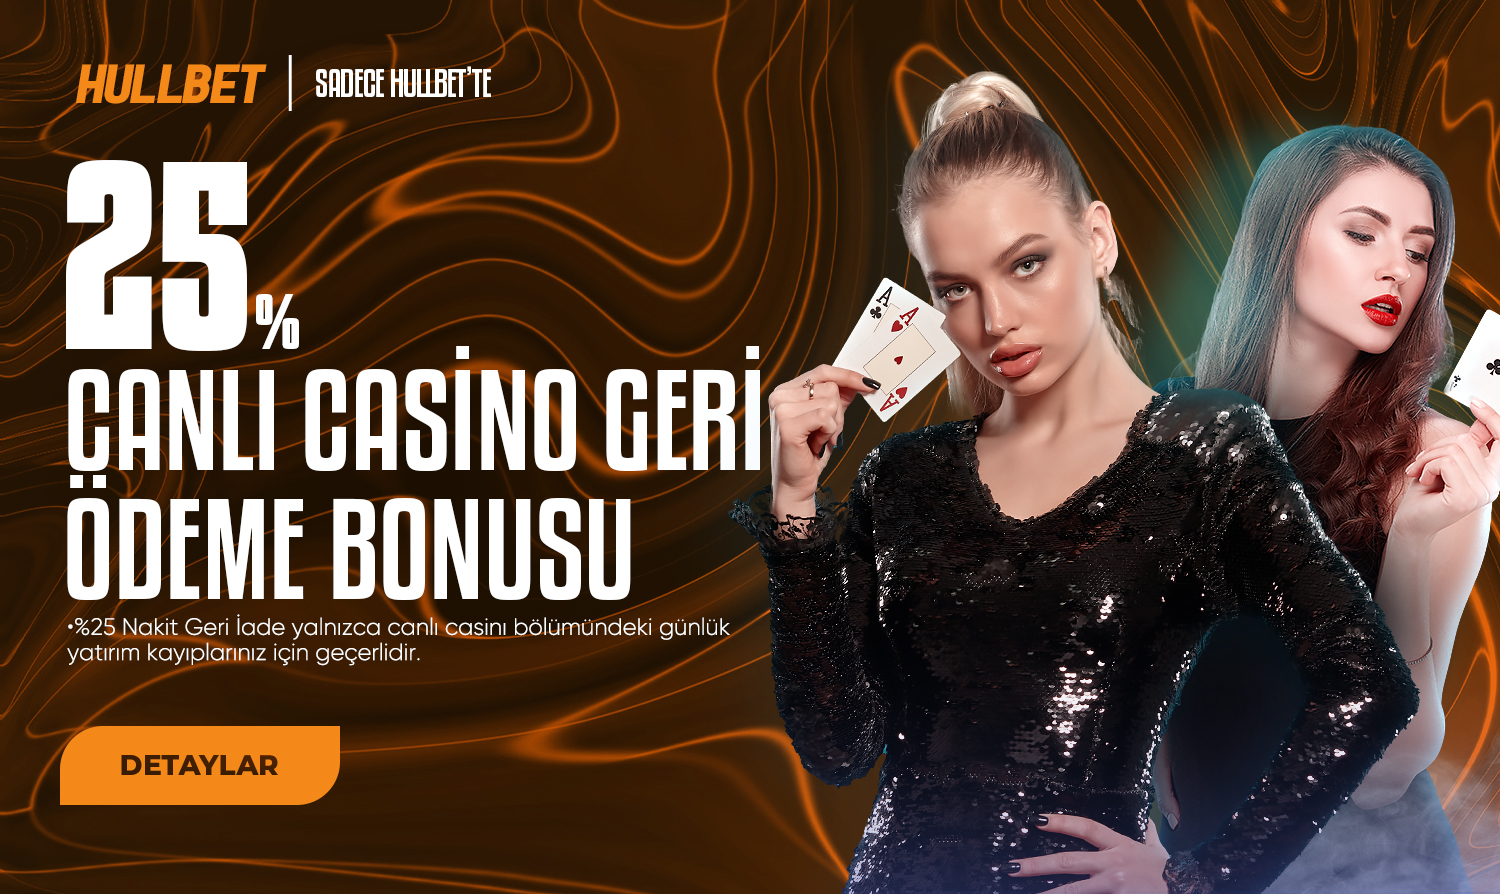 Hullbet %25 Canlı Casino Kayıp Bonusu detayları